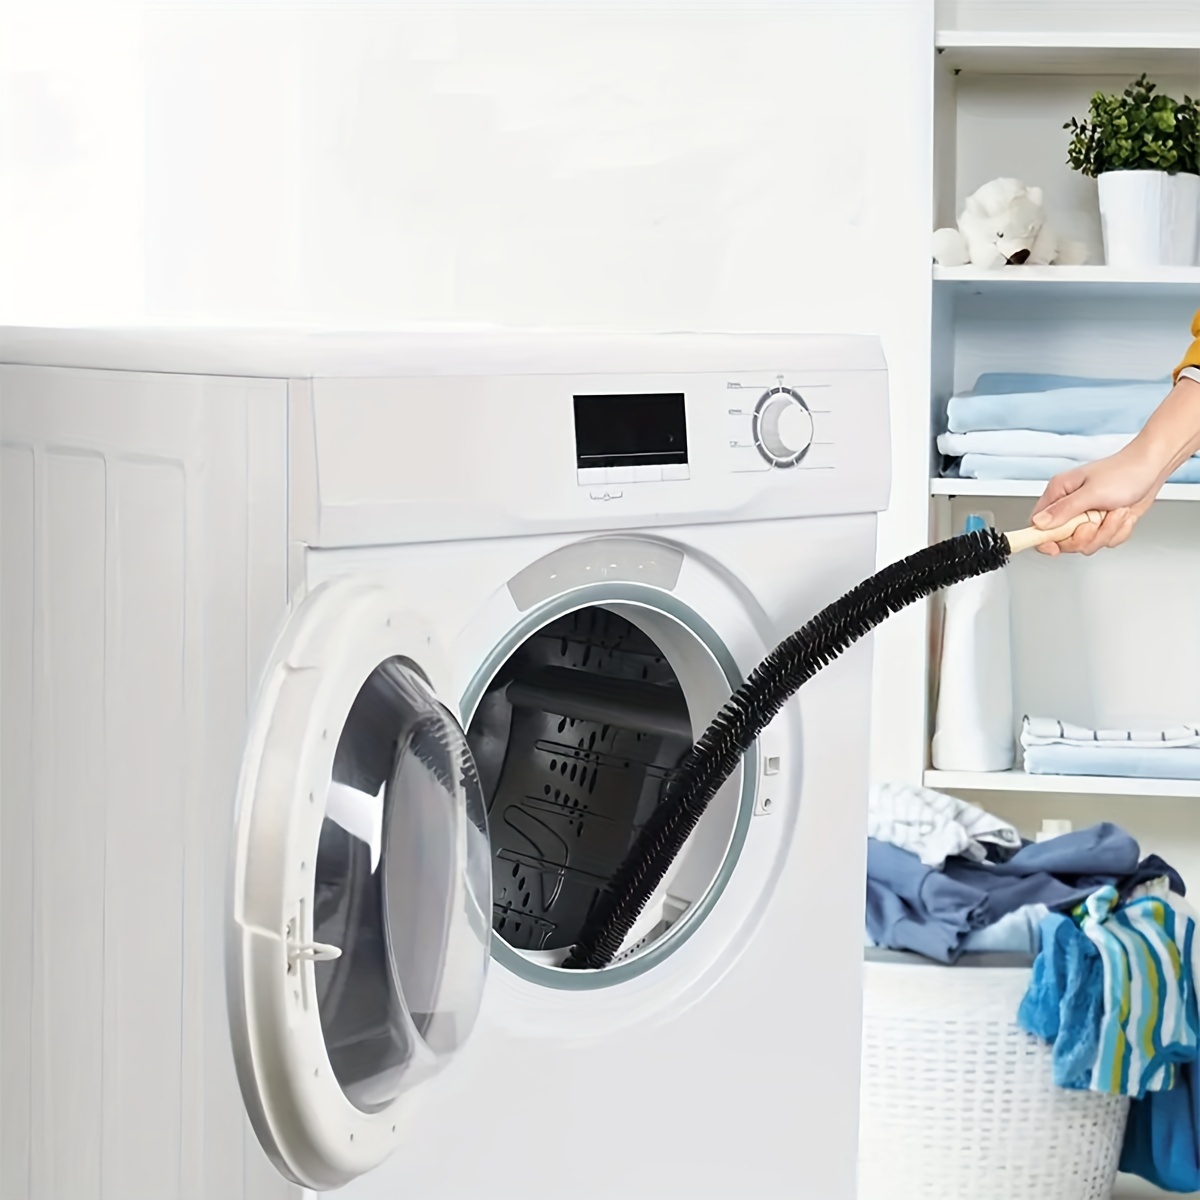 MKYOKO Kühler Spule Reinigungsbürste - Trockner Belüftung Reiniger  Fusselbürste  360 Grad drehbare Nylon Scheuerbürste für Trockner,  Waschmaschine: : Elektro-Großgeräte